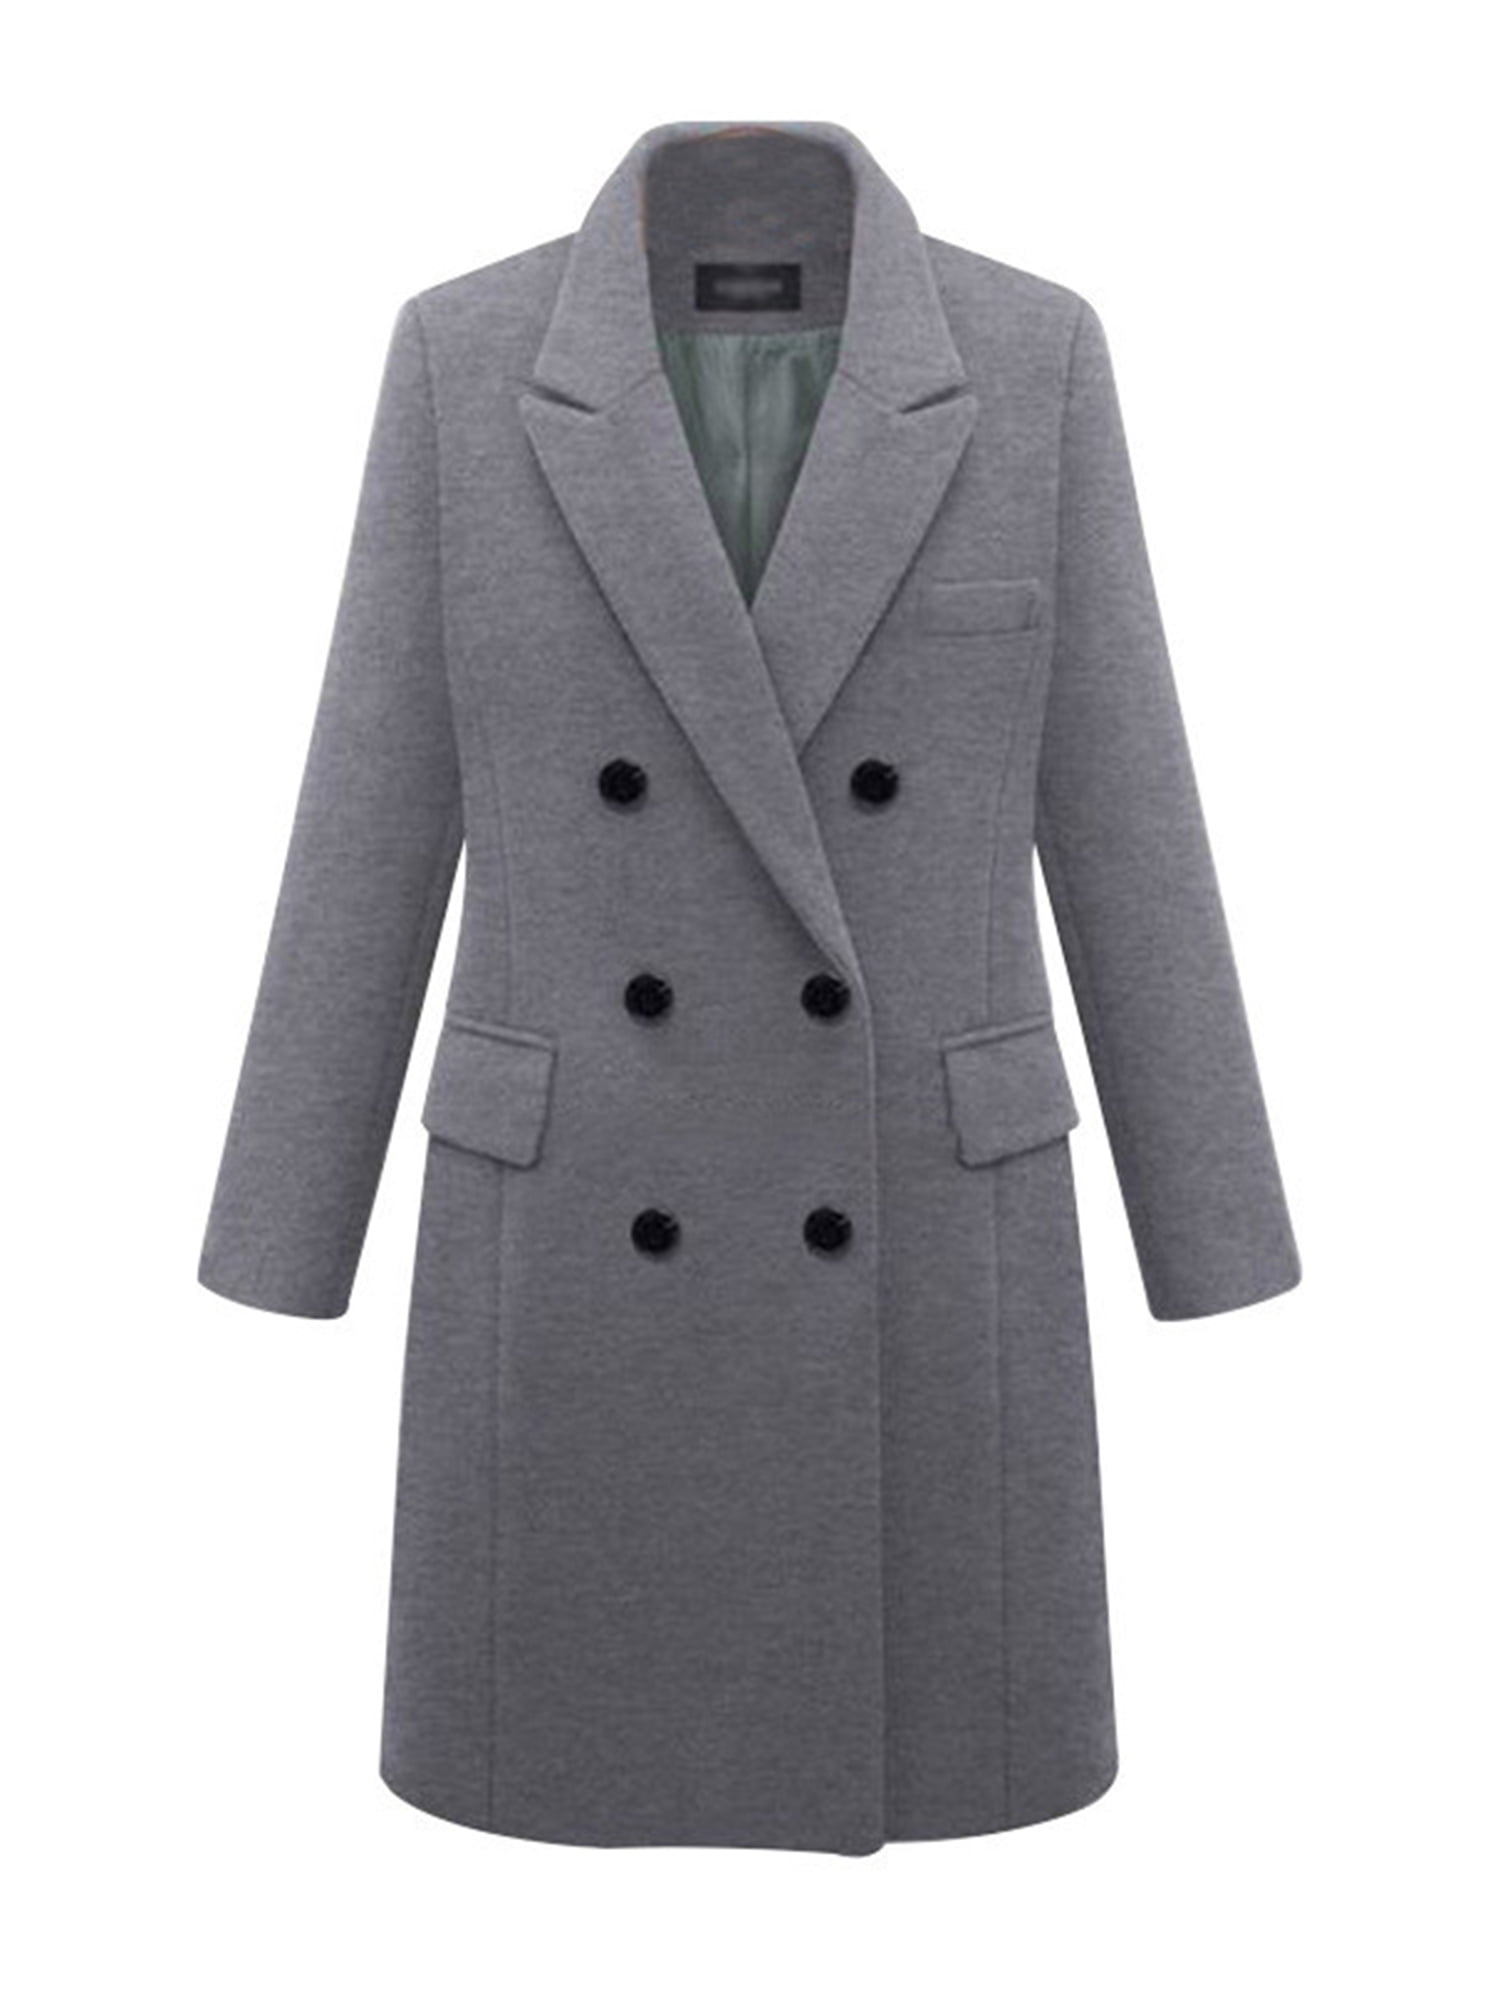 Womens Winter Lapel Wool Coat Trench Jacket Button Plus Size Overcoat Outwear 